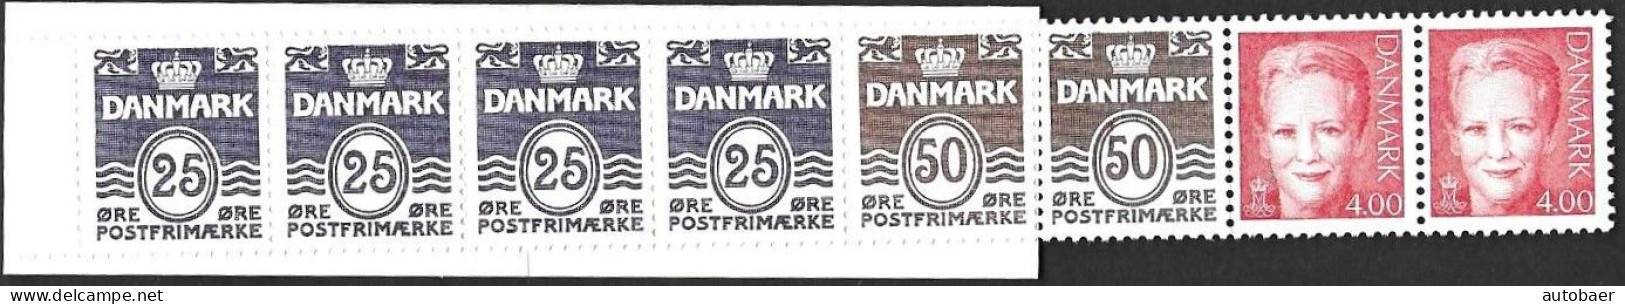 Denmark Danmark 2000 Queen Margrethe Michel No. MH 60 Carnet Booklet Mint MNH Neuf Postfrisch ** - Markenheftchen